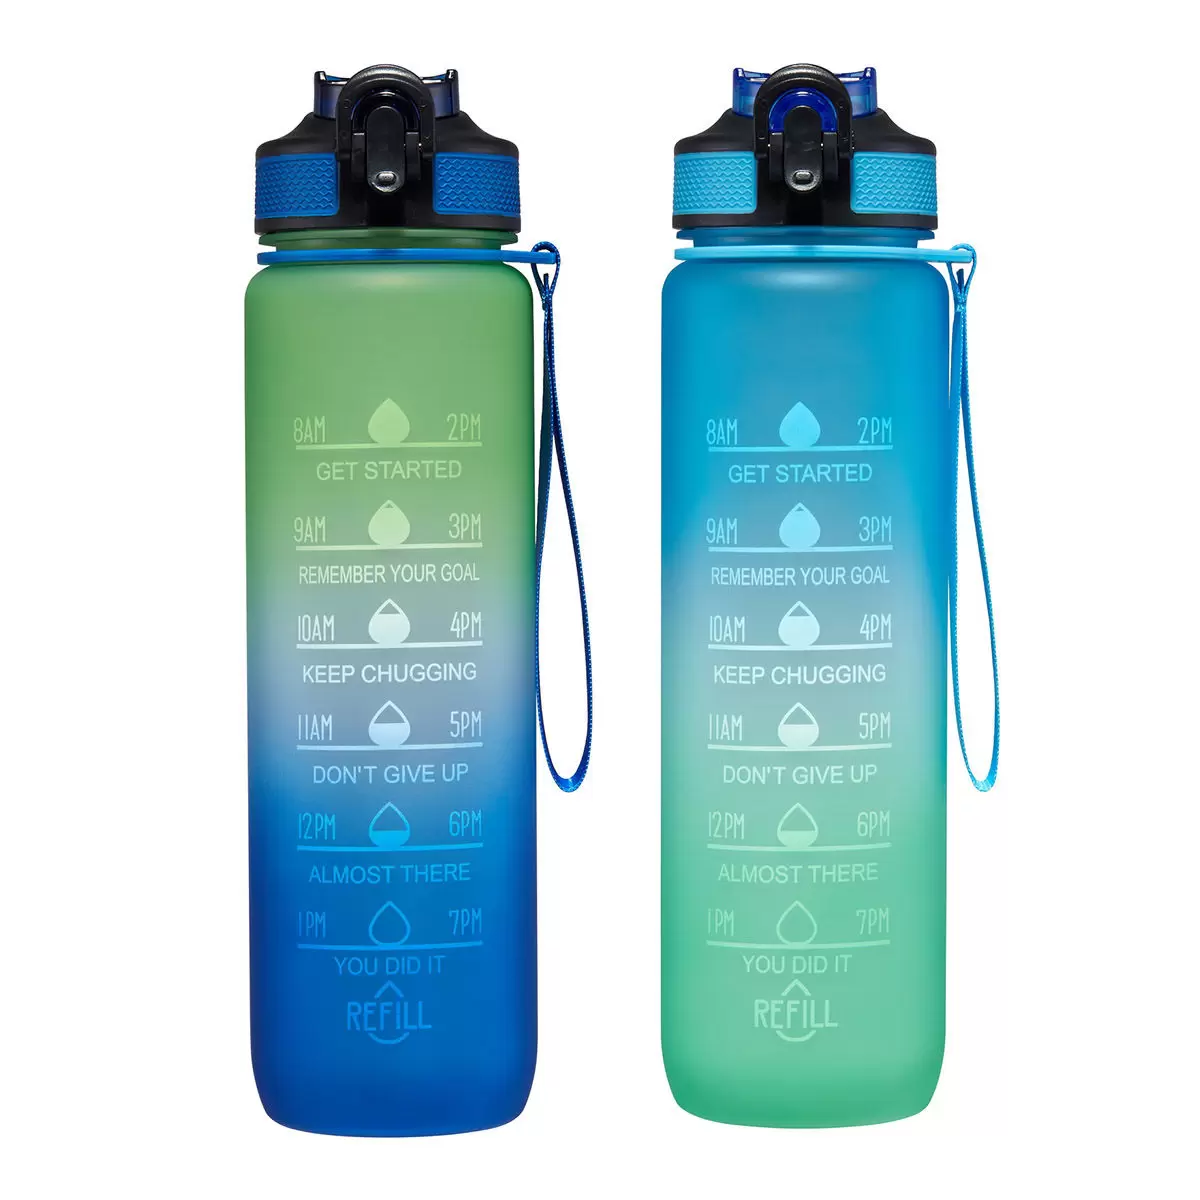 吸管冷水瓶 887毫升 X 2件組 藍色+綠色